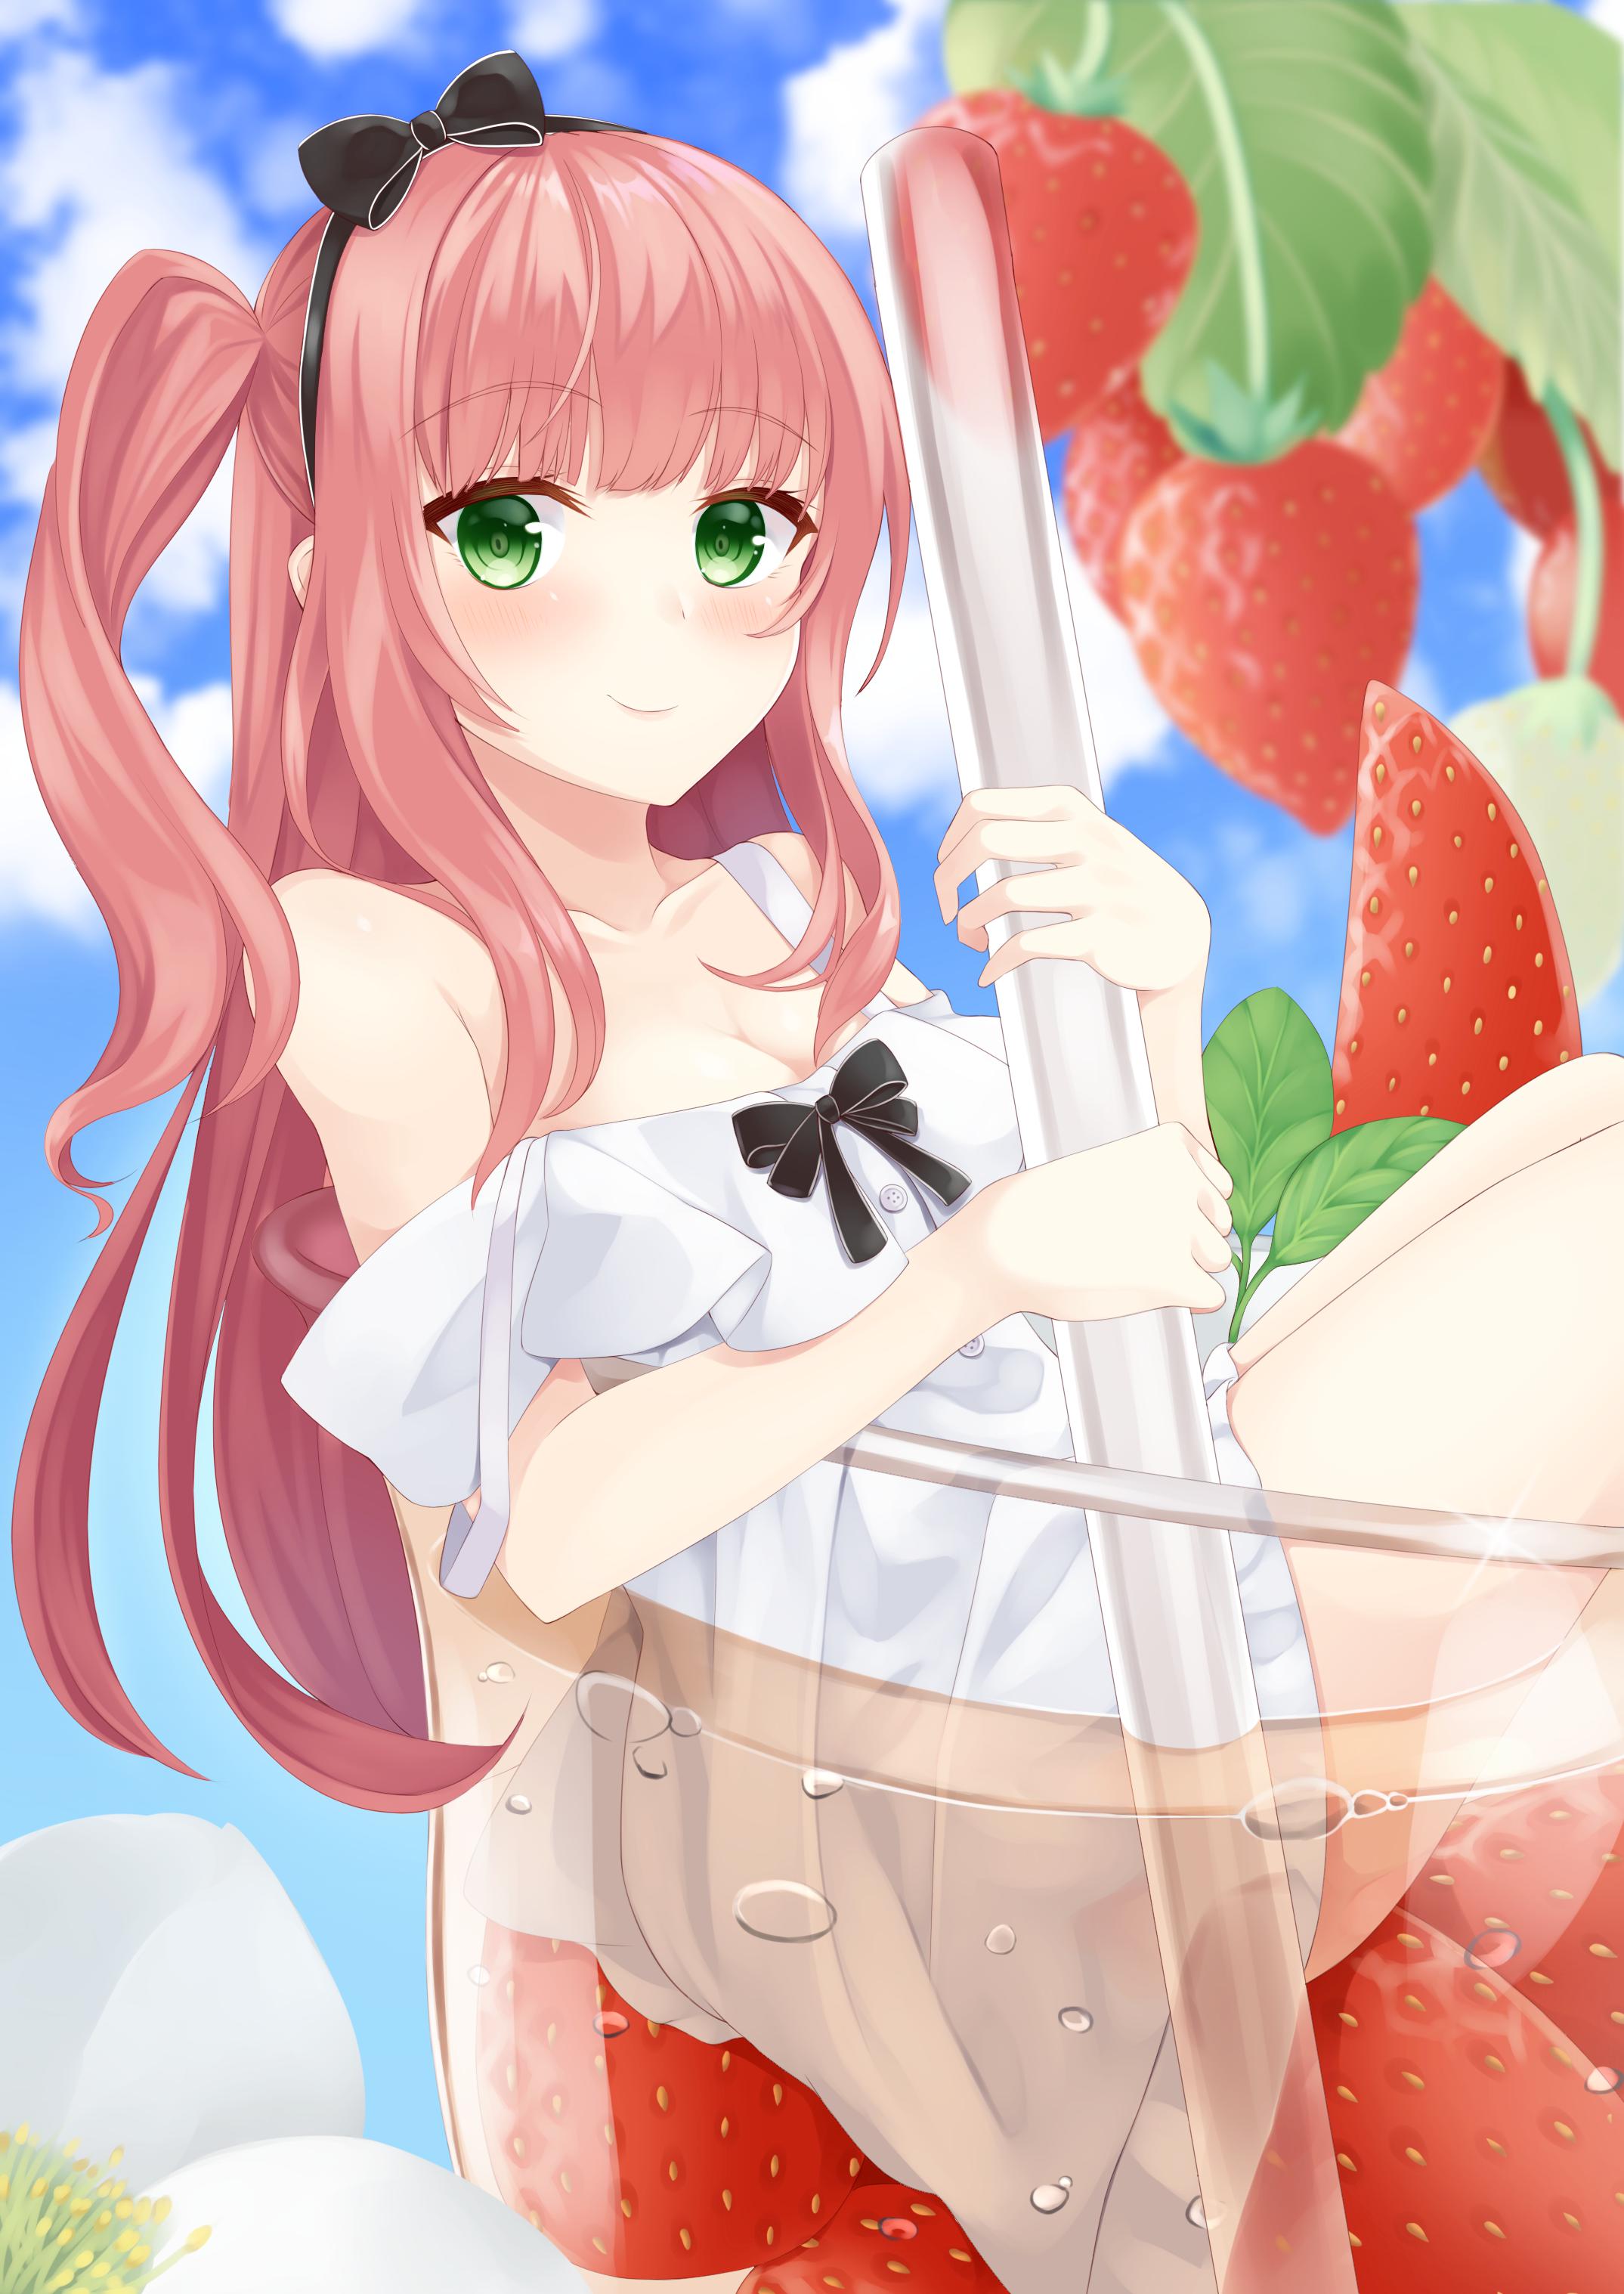 草莓汁插画图片壁纸